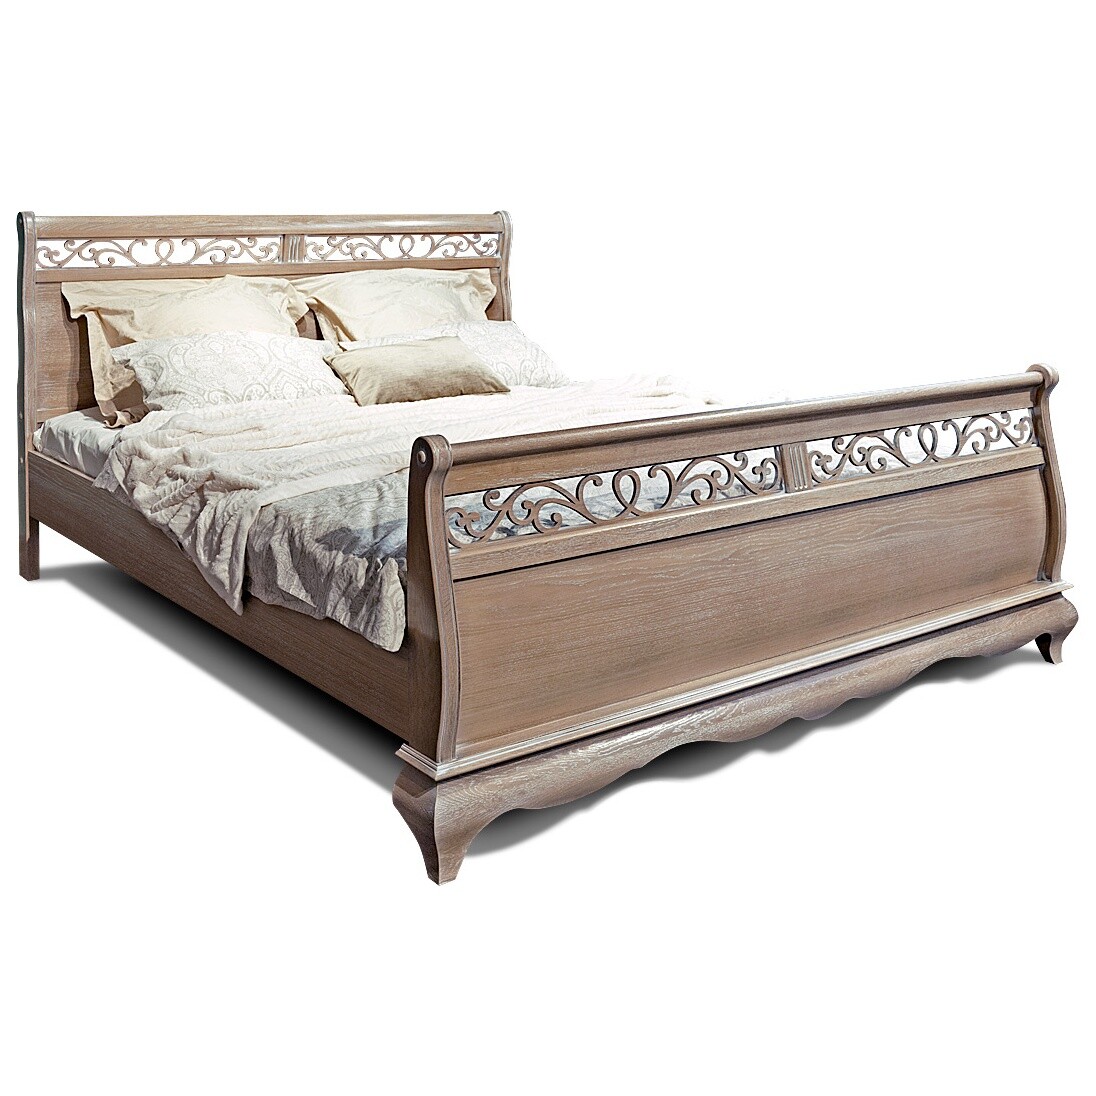 Кровать двуспальная с высоким изножьем 180х220 см амбэр с белой патиной &quot;Оскар&quot;